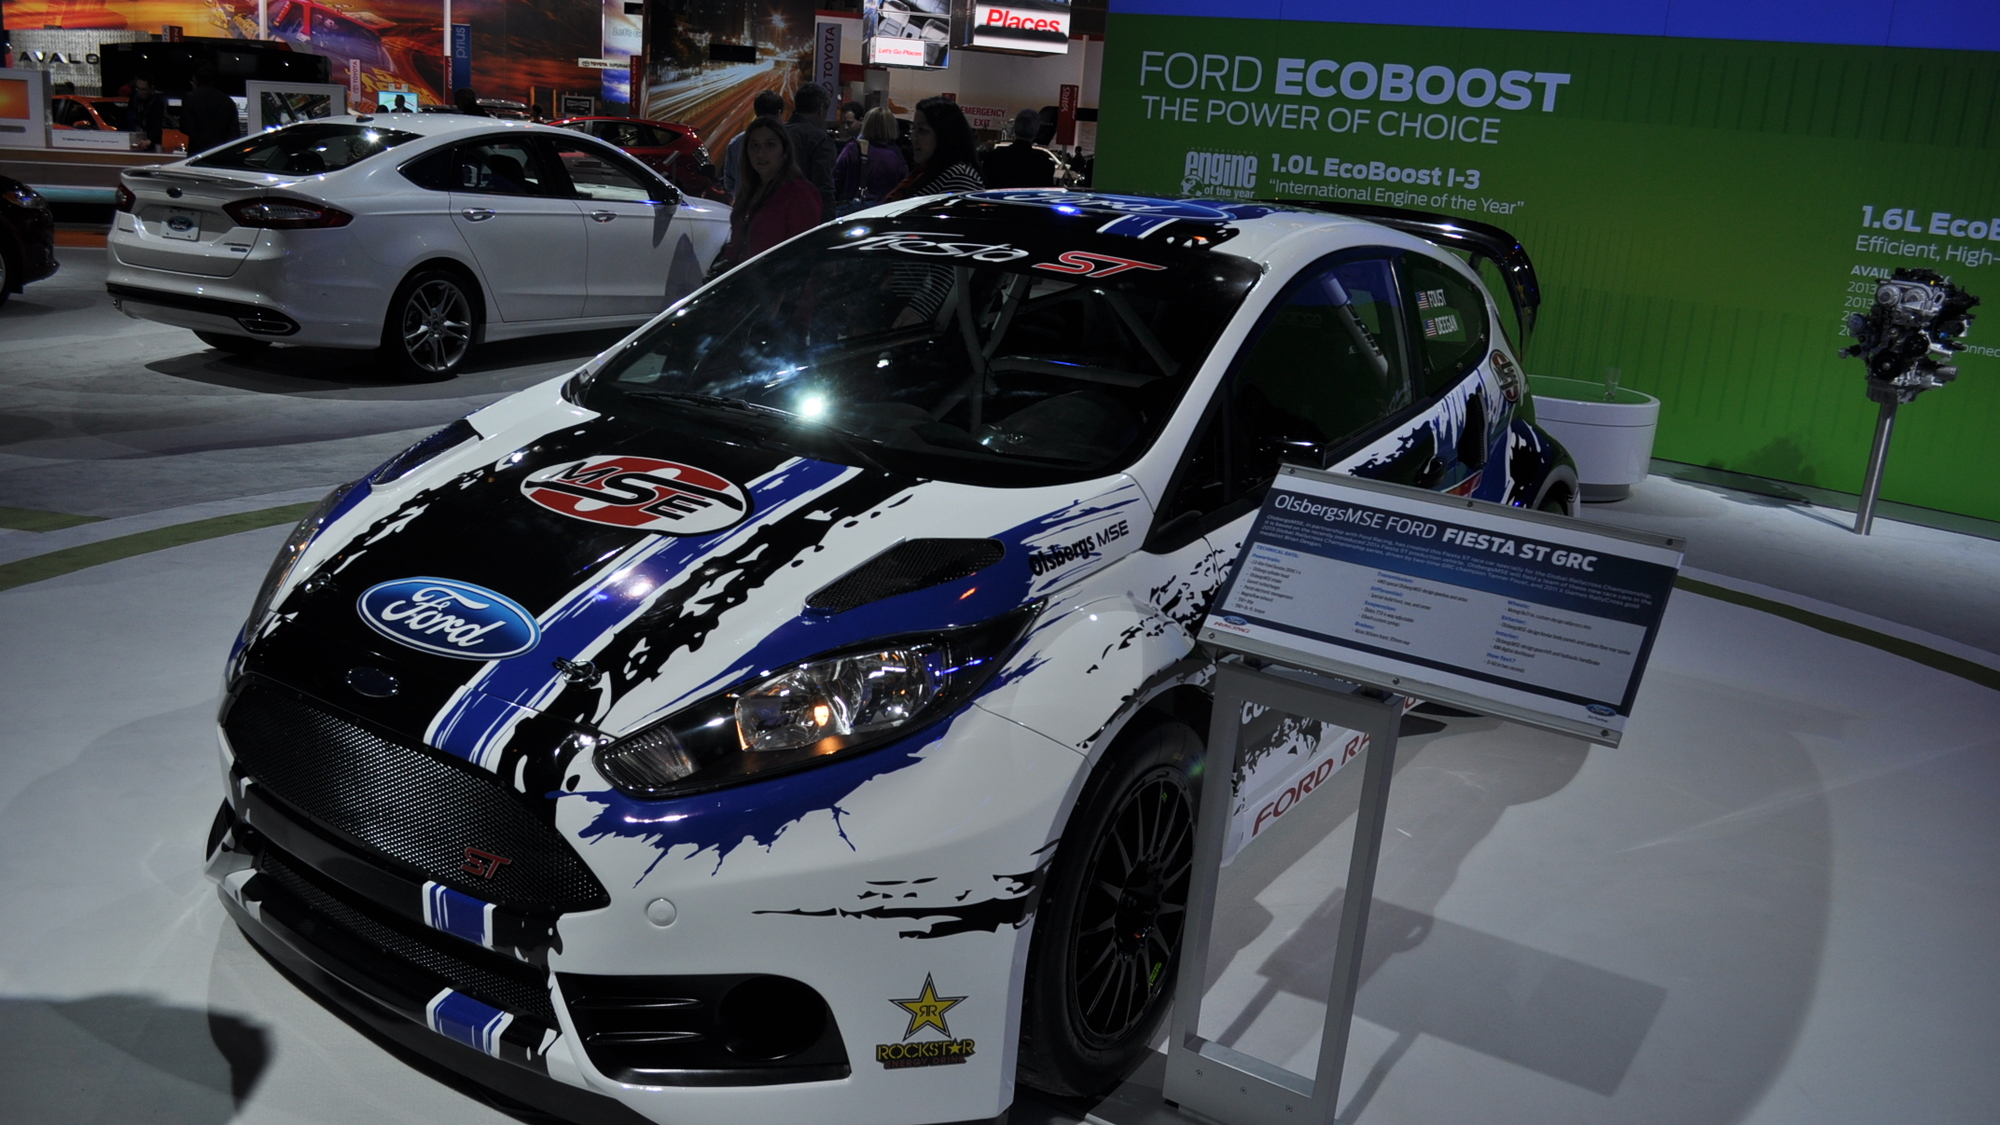 2013 Ford Fiesta ST Global RallyCross race car live shots